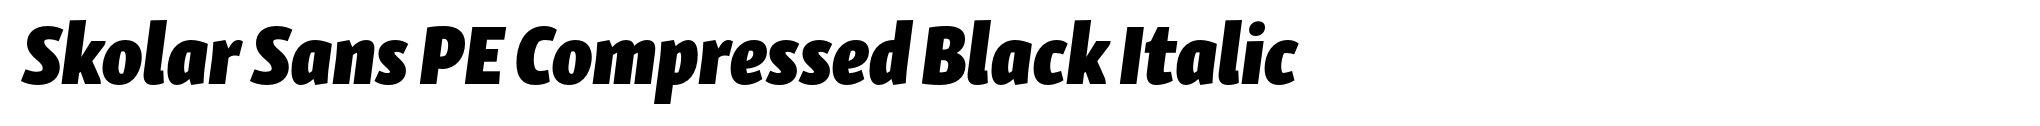 Skolar Sans PE Compressed Black Italic image